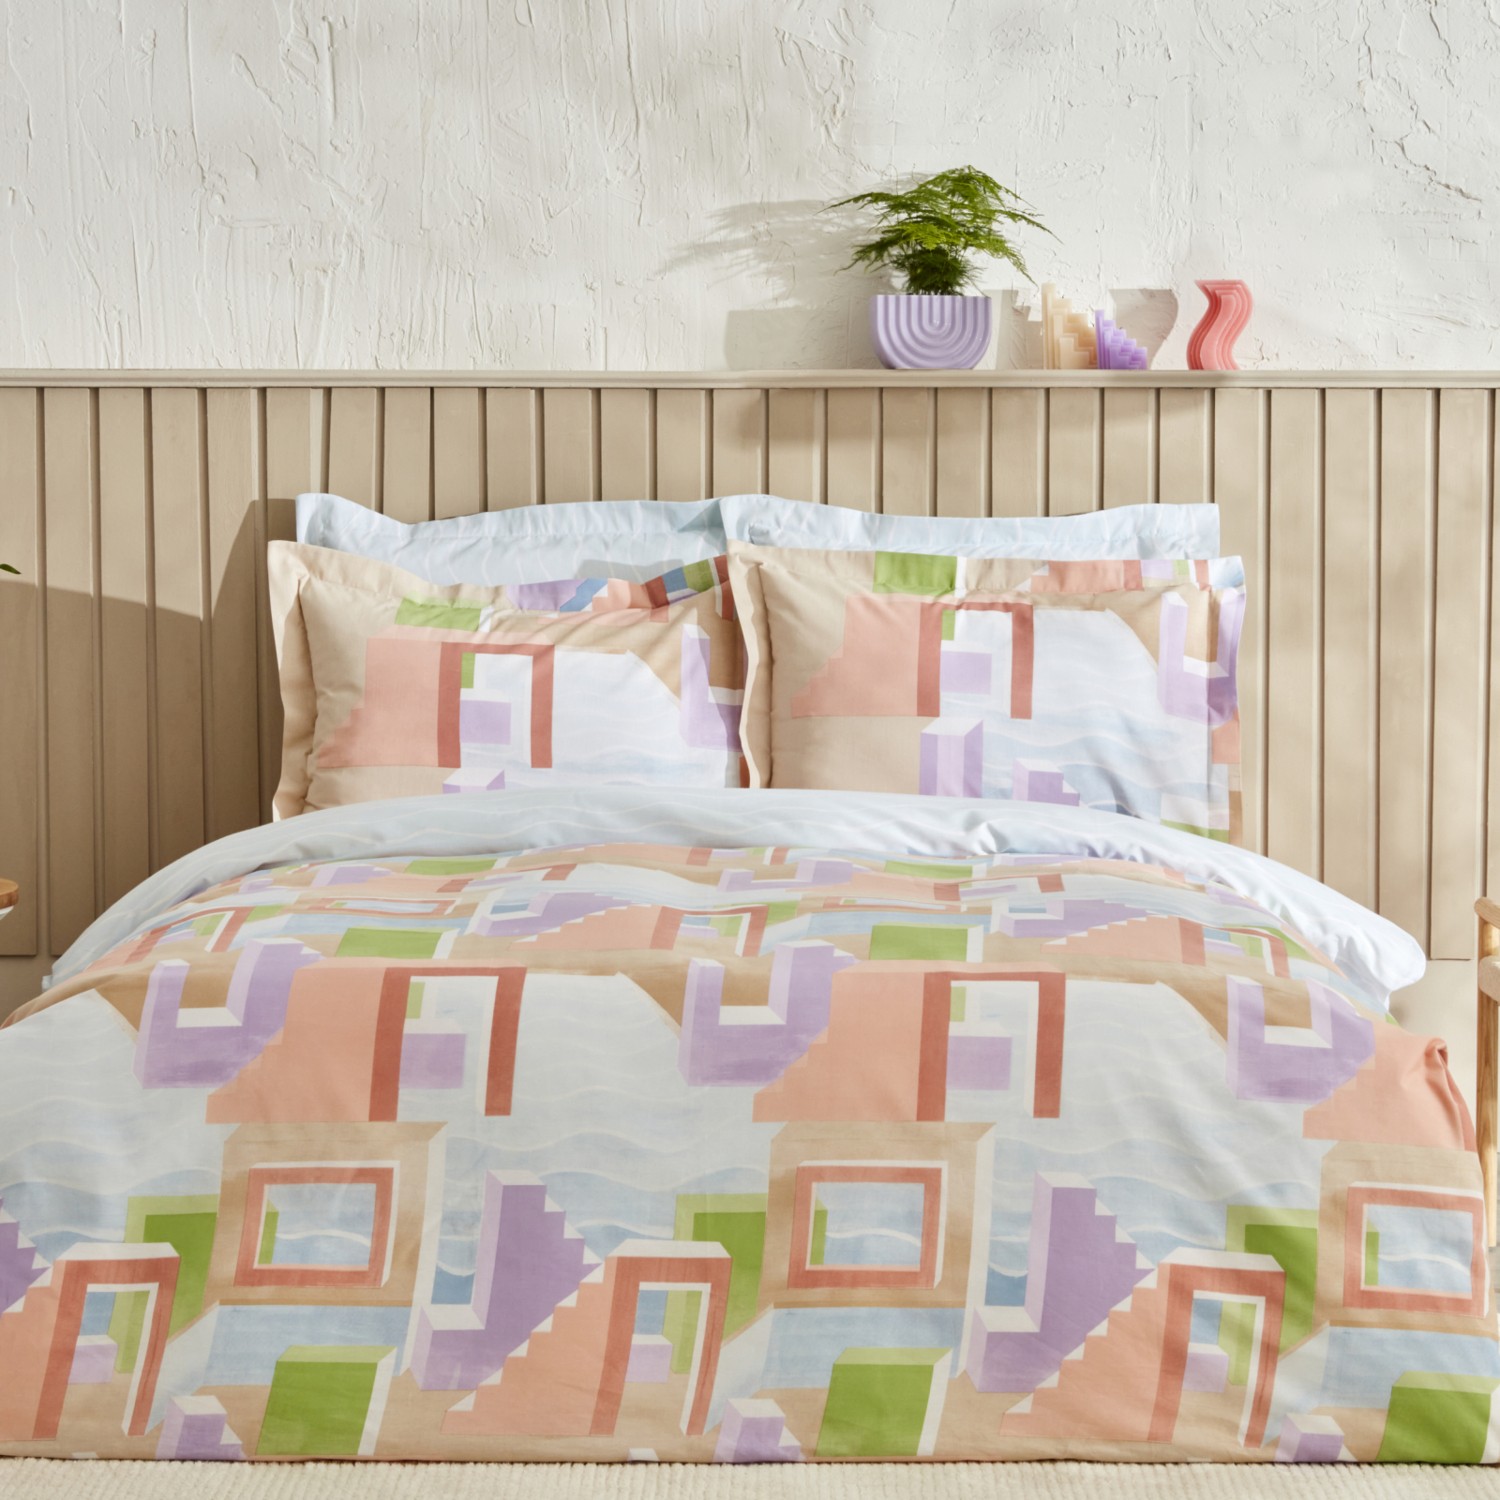 комплект постельного белья с вышивкой karaca home Комплект постельного белья Karaca Home Semblance, разноцветный